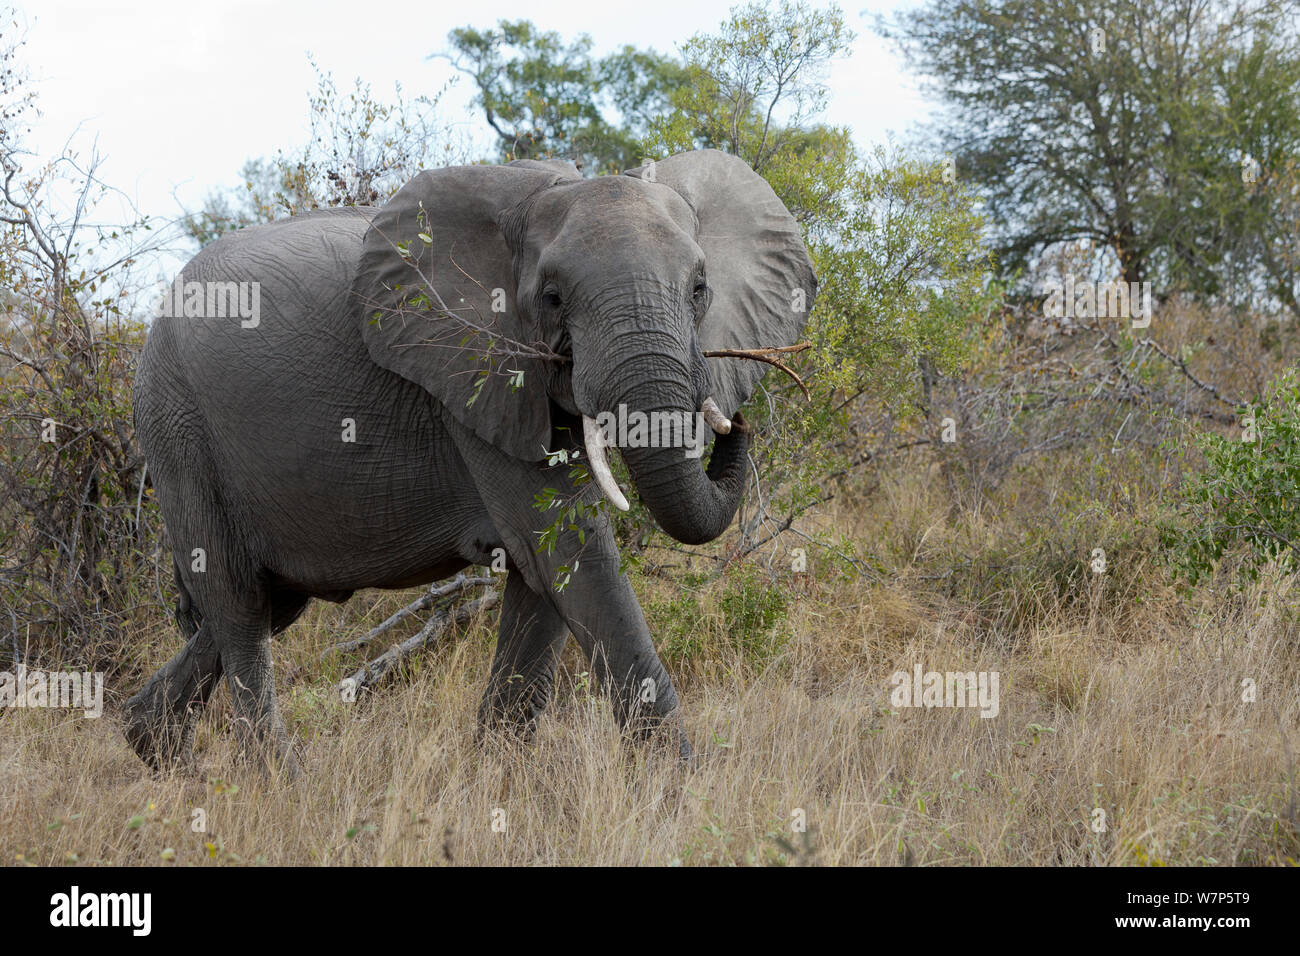 L'éléphant africain (Loxodonta africana) mâles se nourrissent de la végétation. Le parc national Kruger, Afrique du Sud. Banque D'Images